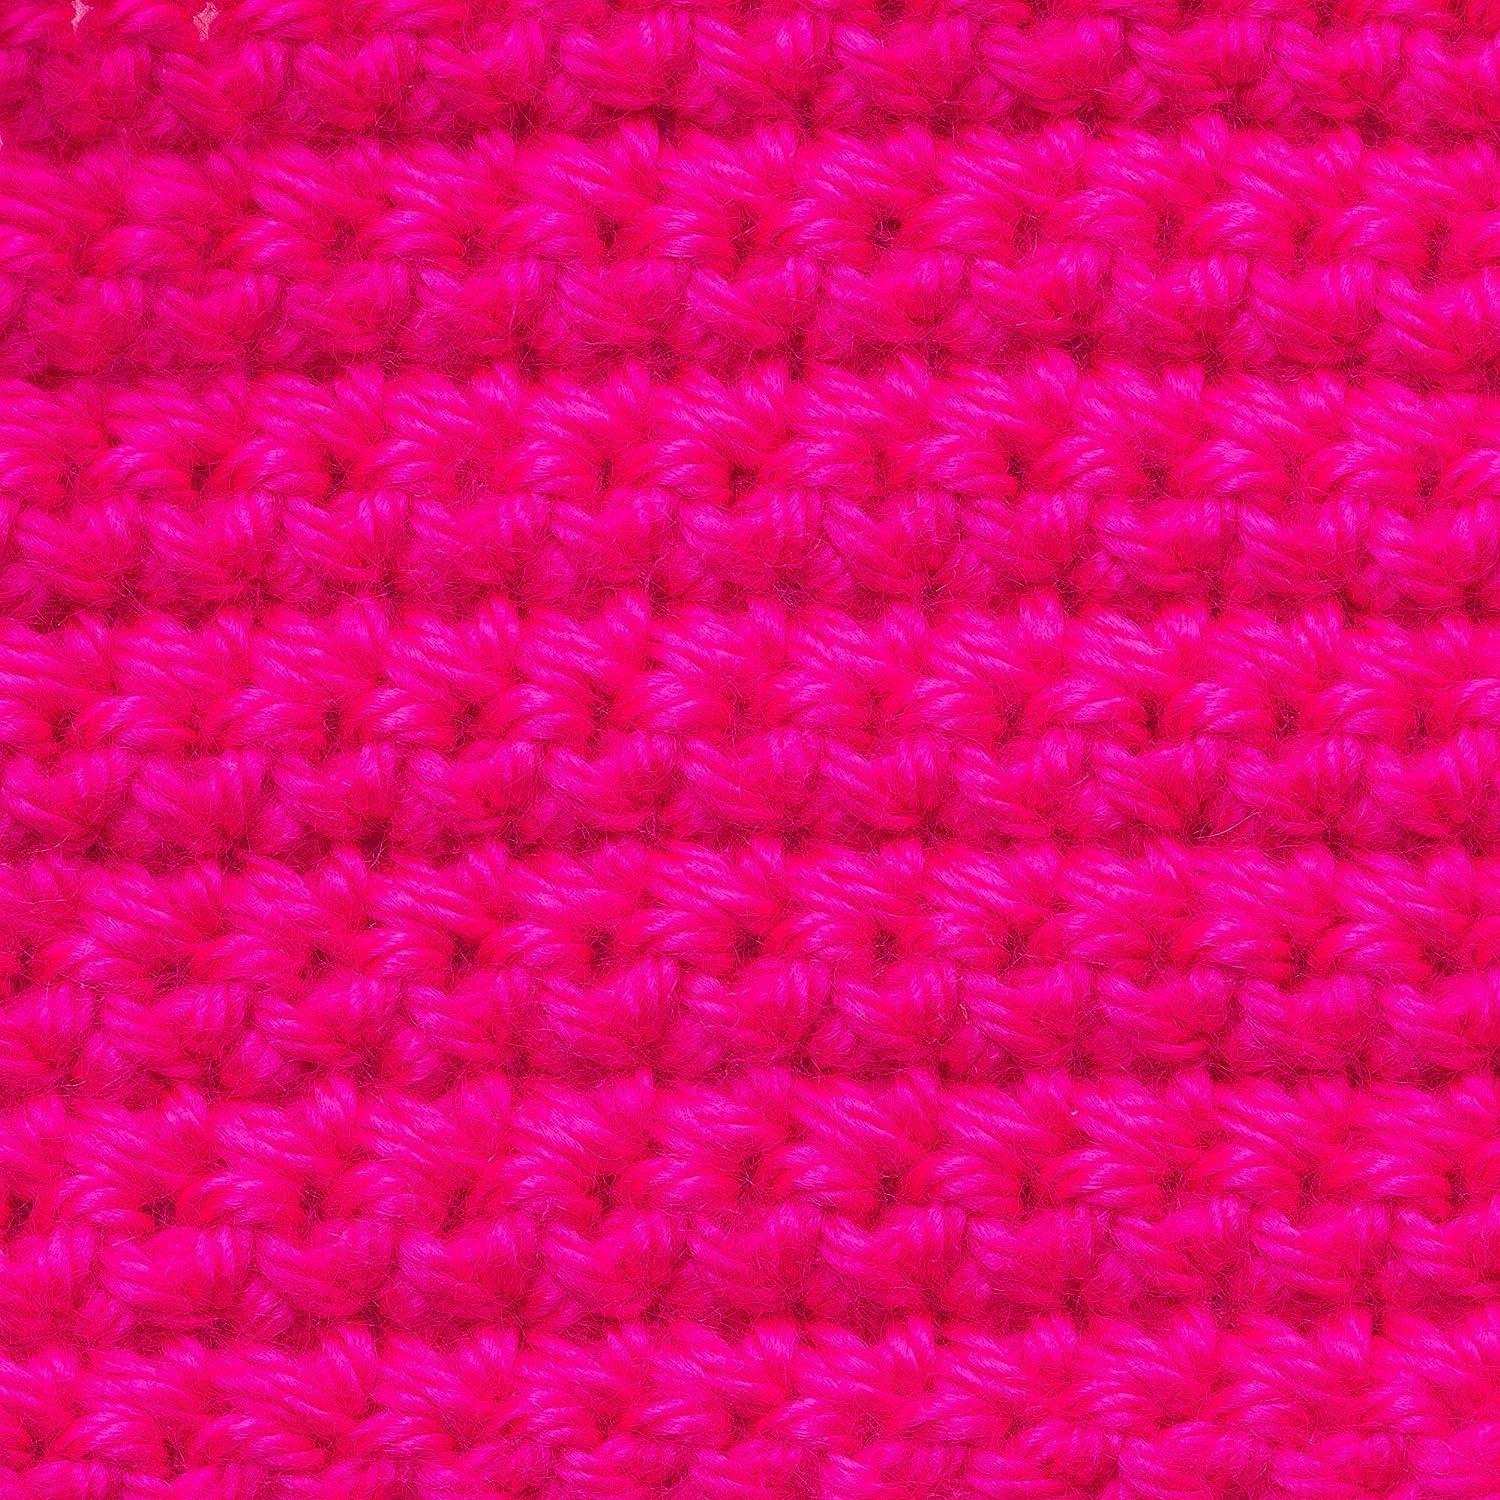 Crochet: Understanding Gauge, Yarn & Hook Sizes - the neon tea party